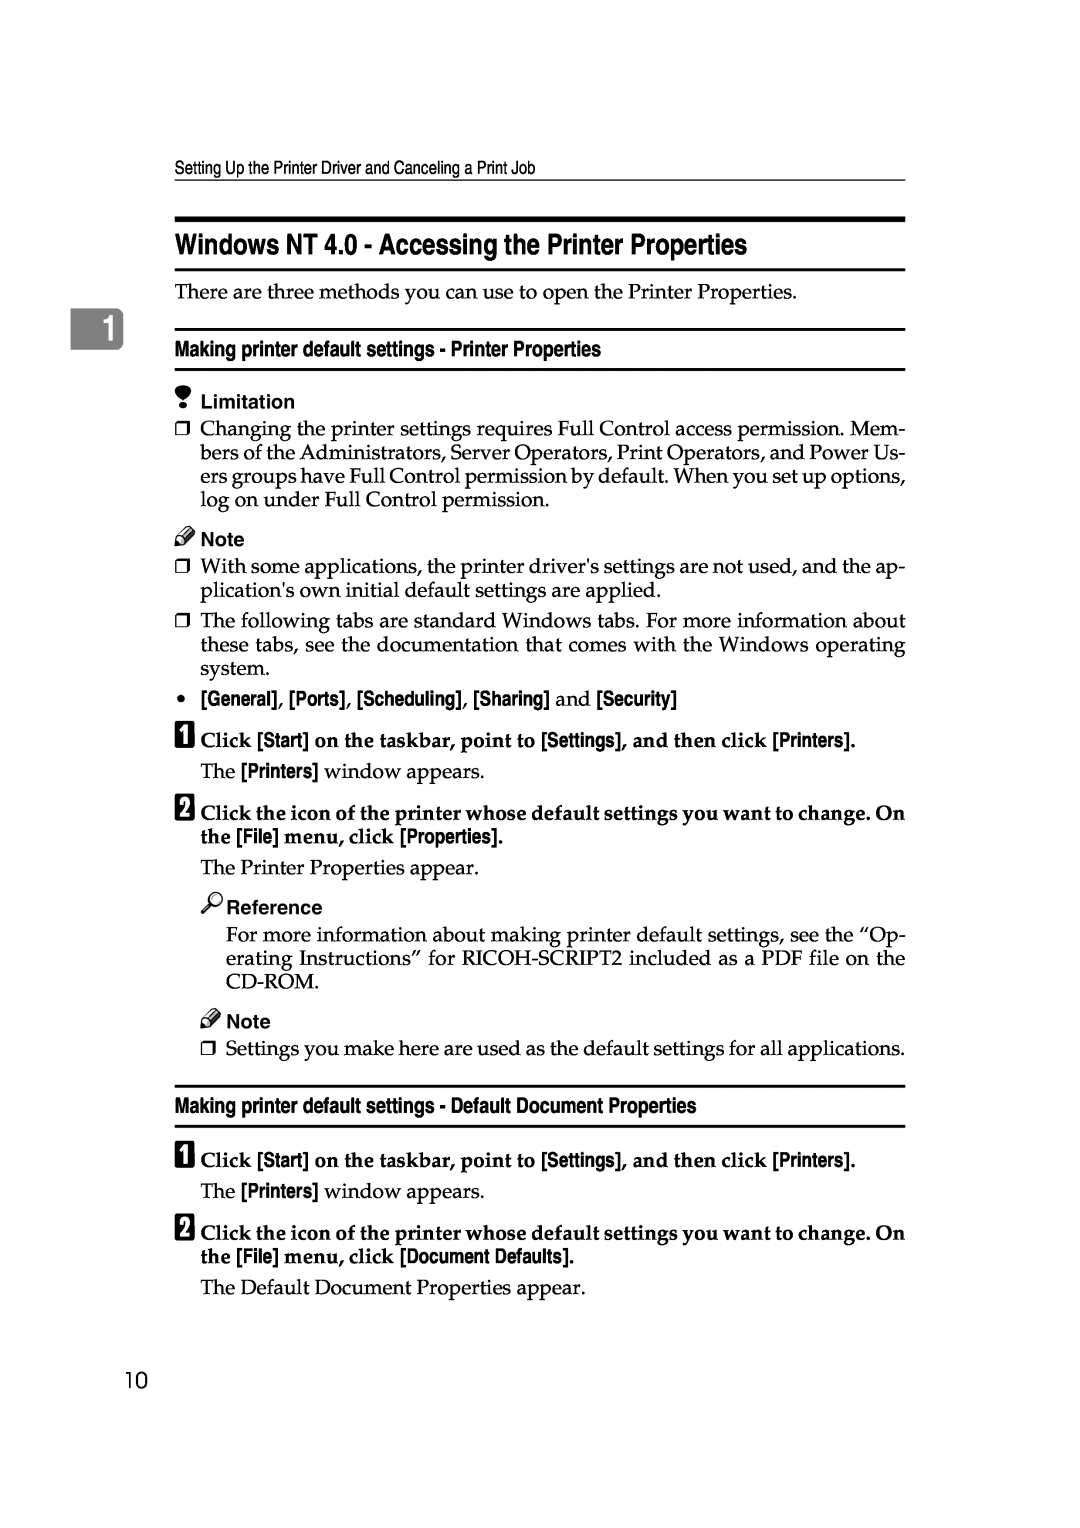 Lanier AP206 manual Windows NT 4.0 - Accessing the Printer Properties, Making printer default settings - Printer Properties 